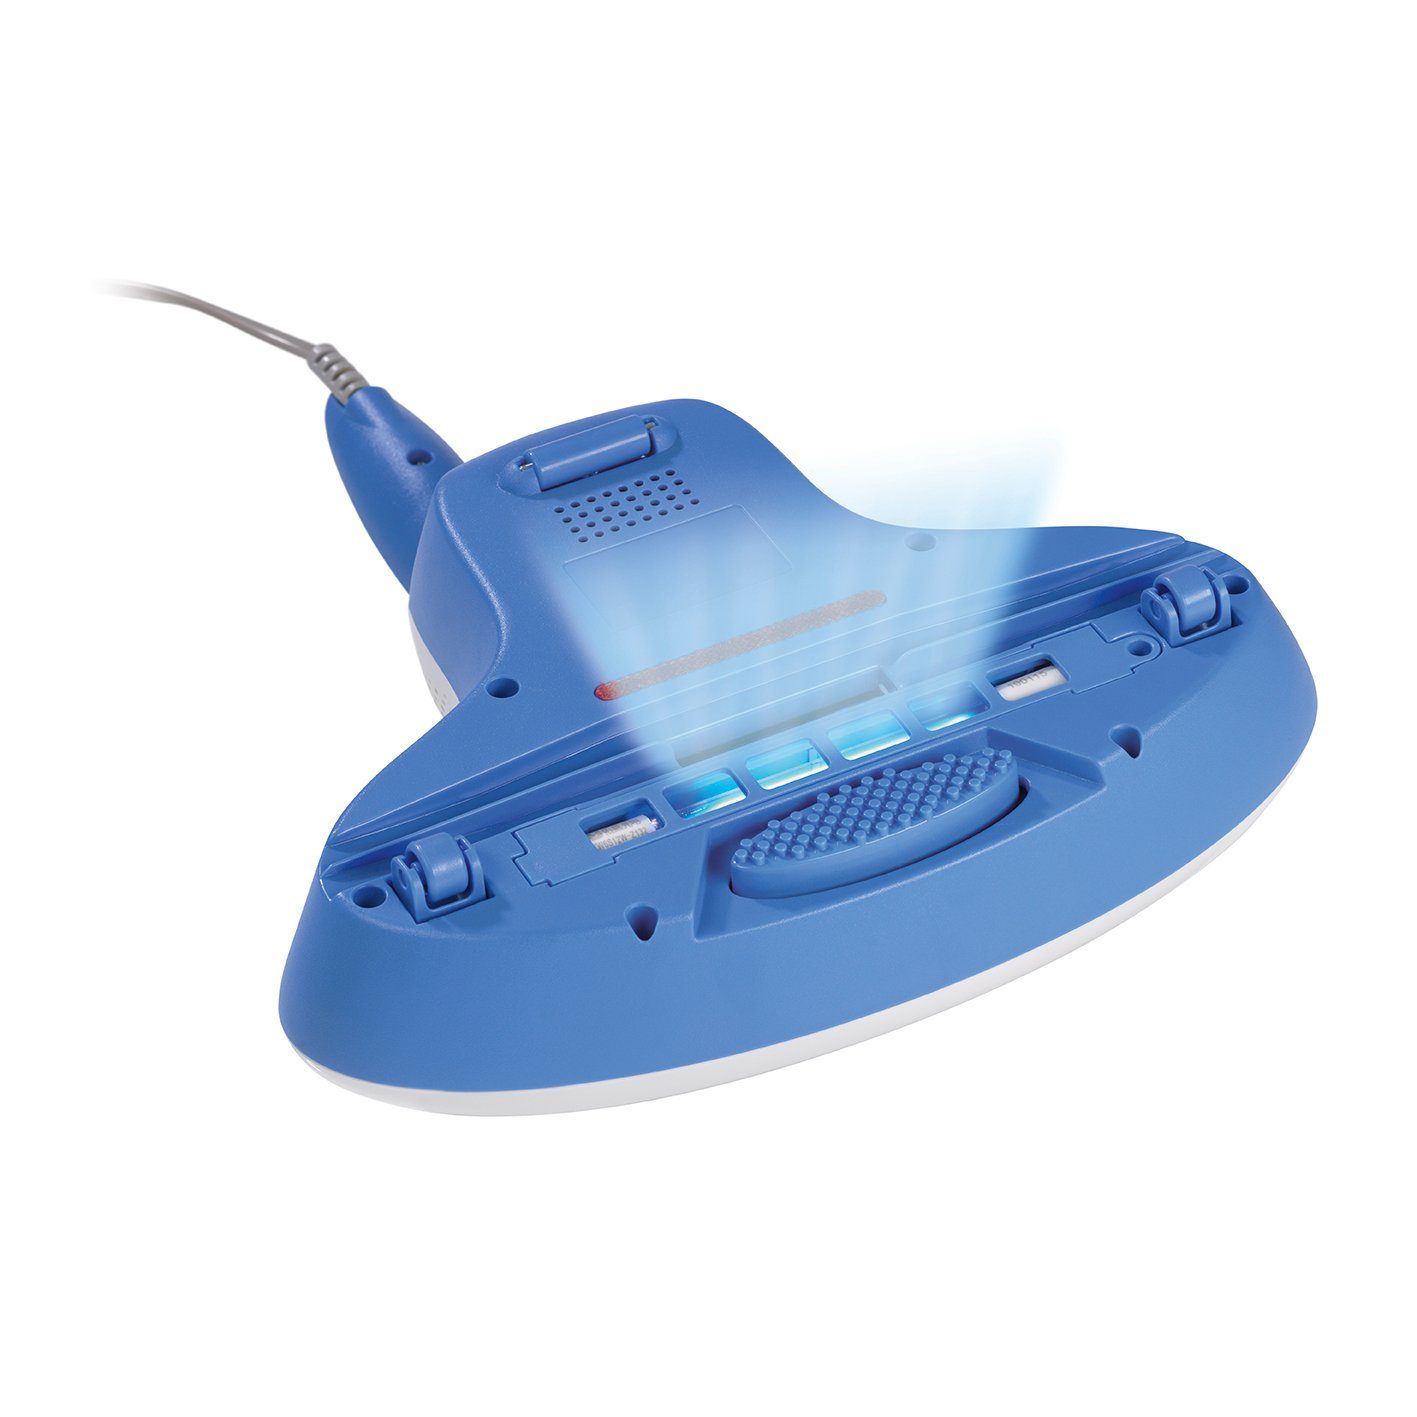 CLEANmaxx Matratzenreinigungsgerät mit UV-C-Licht – Reinigen & Desinfizieren -blau – 300W, Milben-Handstaubsauger blau